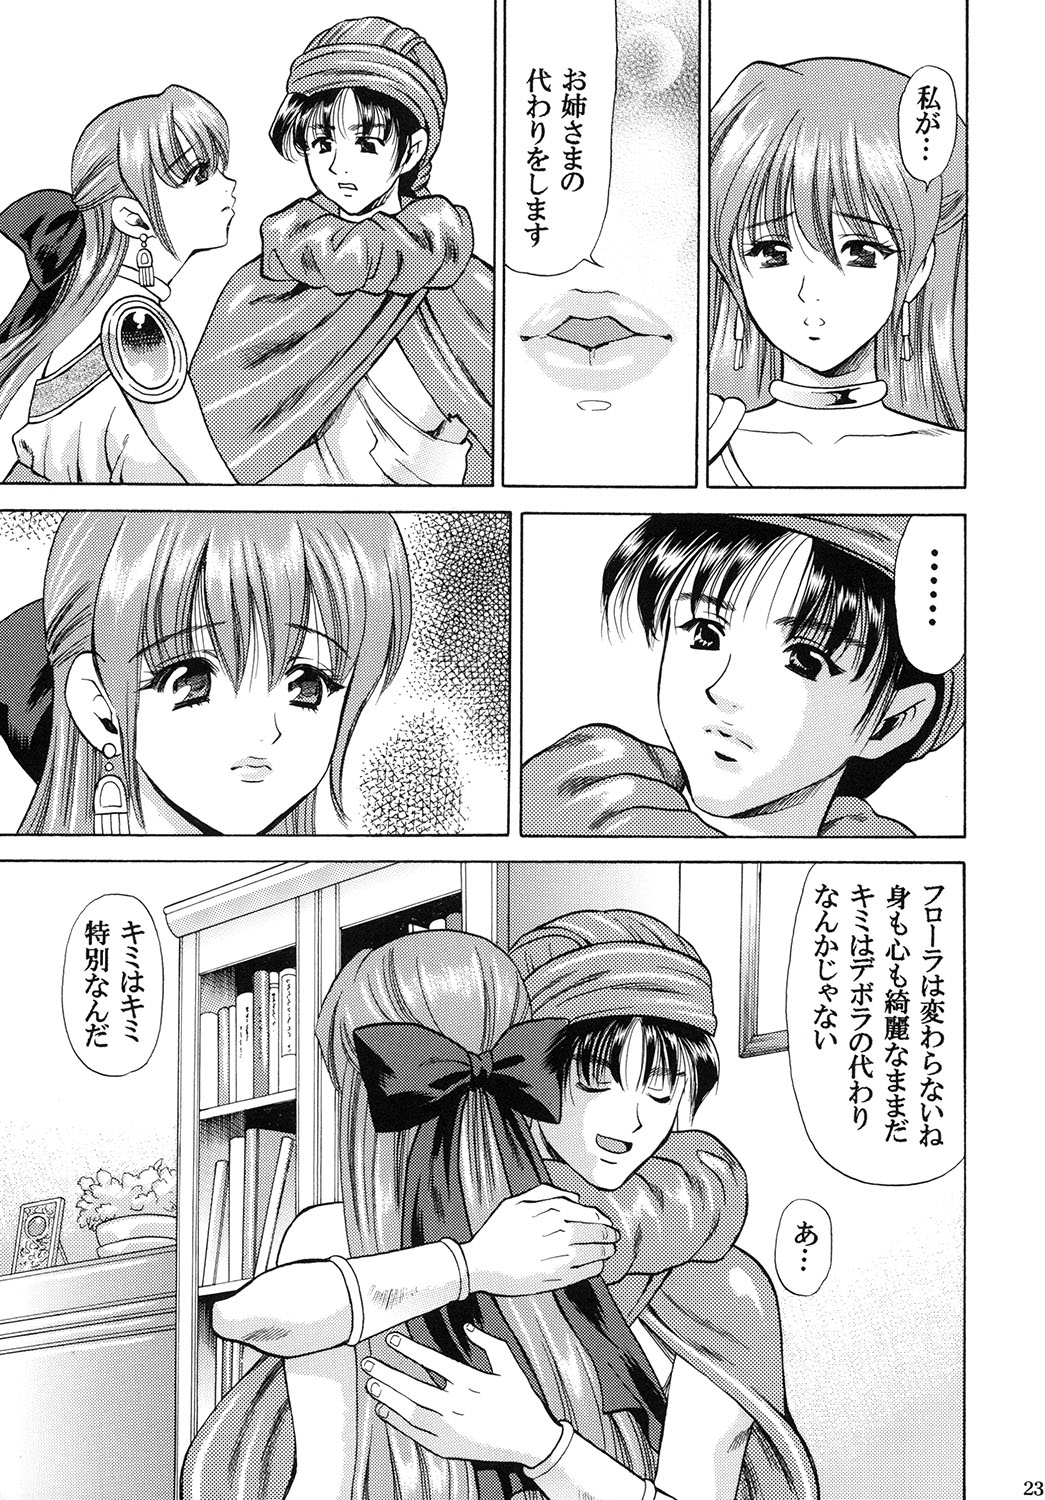 [Houruri (Houruri)] Tsukiyo no Sabaku de Hajimete wo (Dragon Quest V) page 22 full